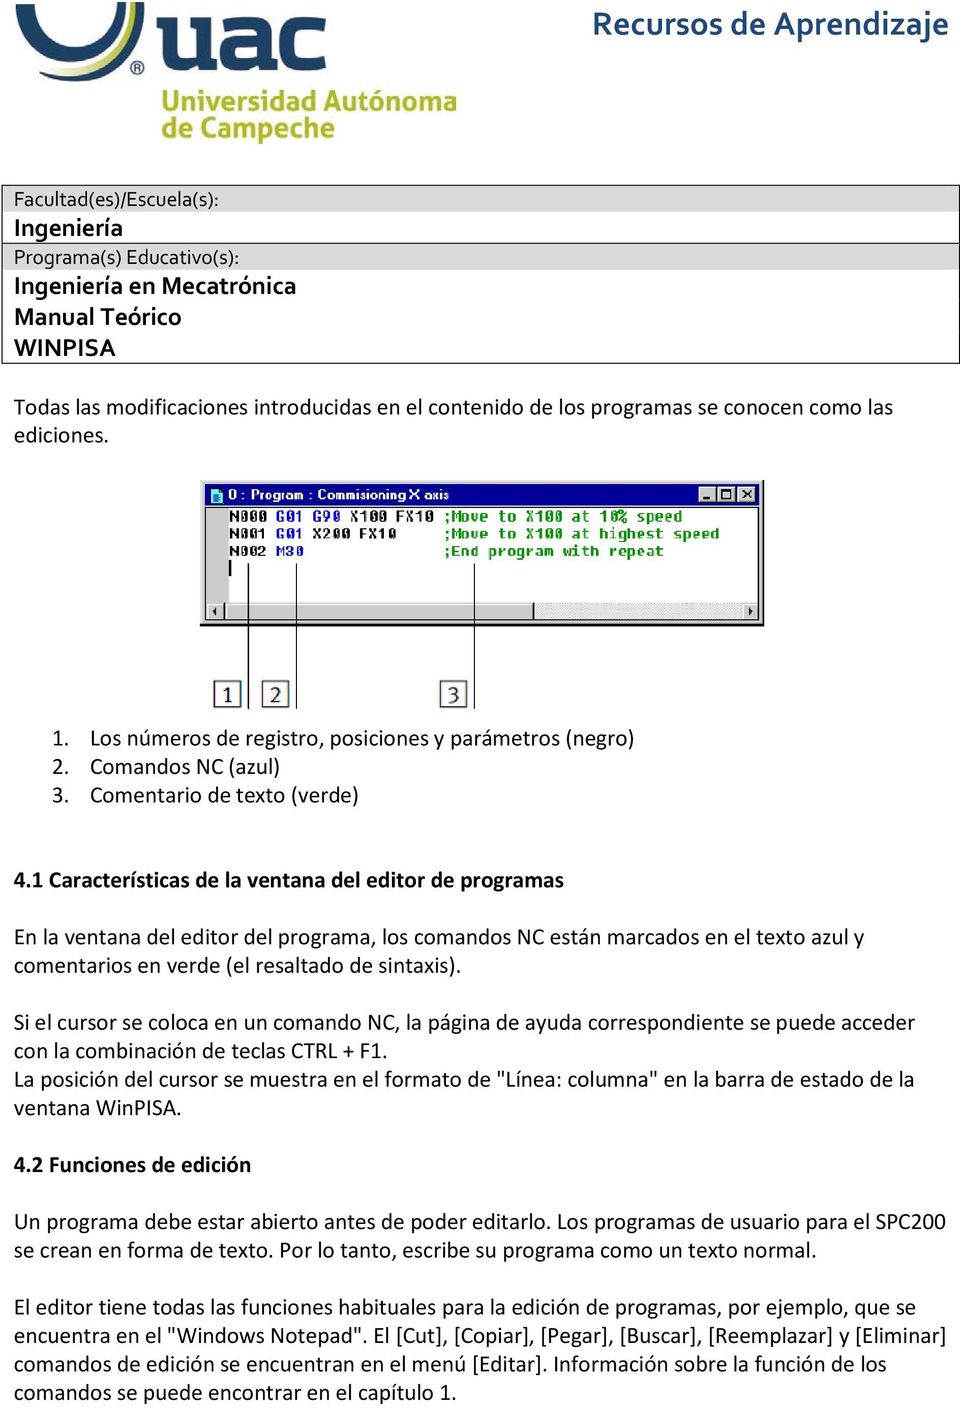 1 Características de la ventana del editor de programas En la ventana del editor del programa, los comandos NC están marcados en el texto azul y comentarios en verde (el resaltado de sintaxis).